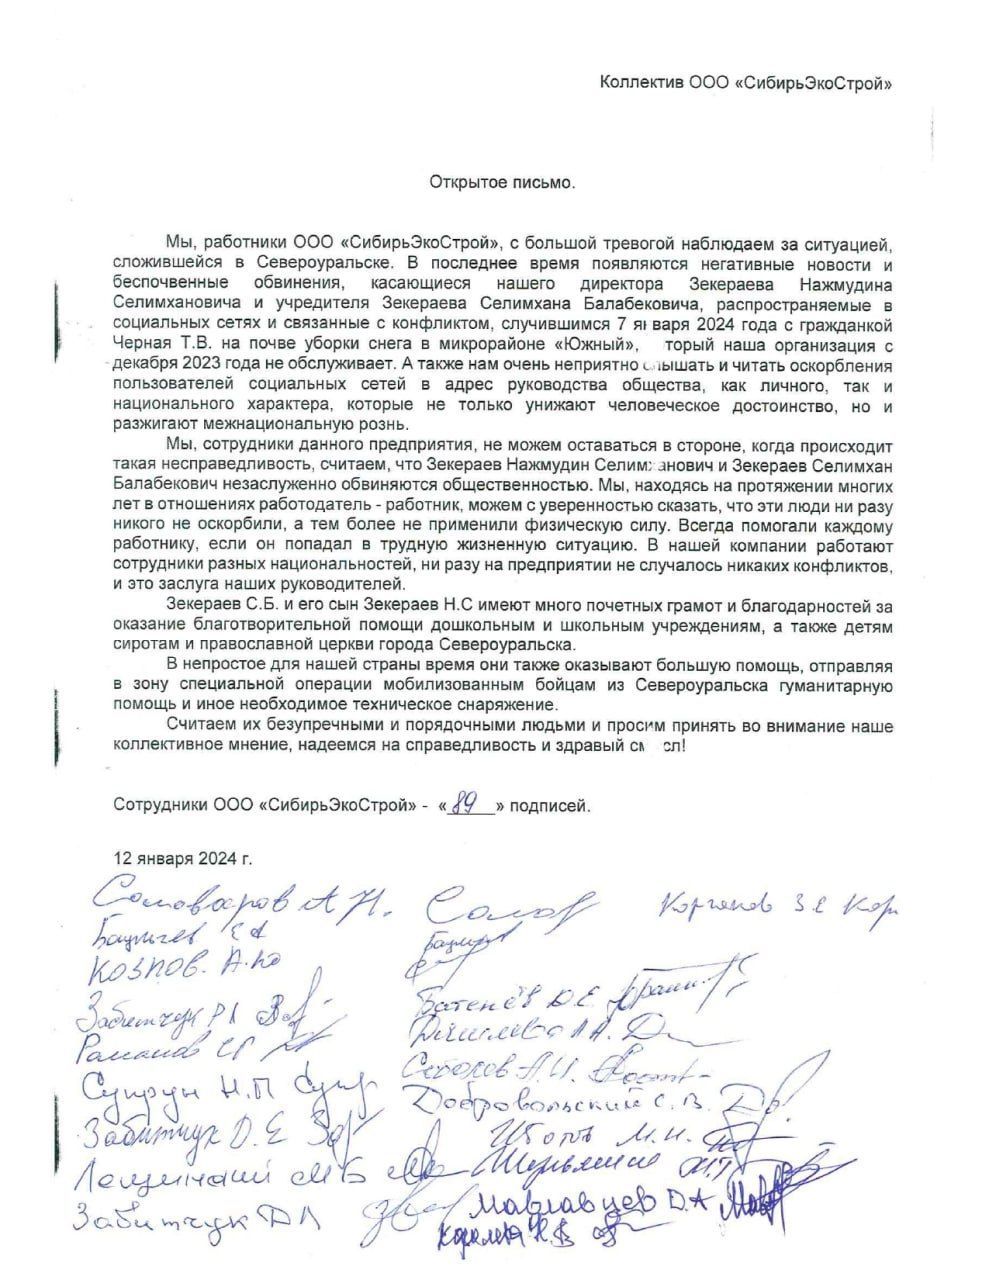 Открытое письмо в защиту Зекераевых подписали 89 сотрудников предприятия "Сибирьэкострой"